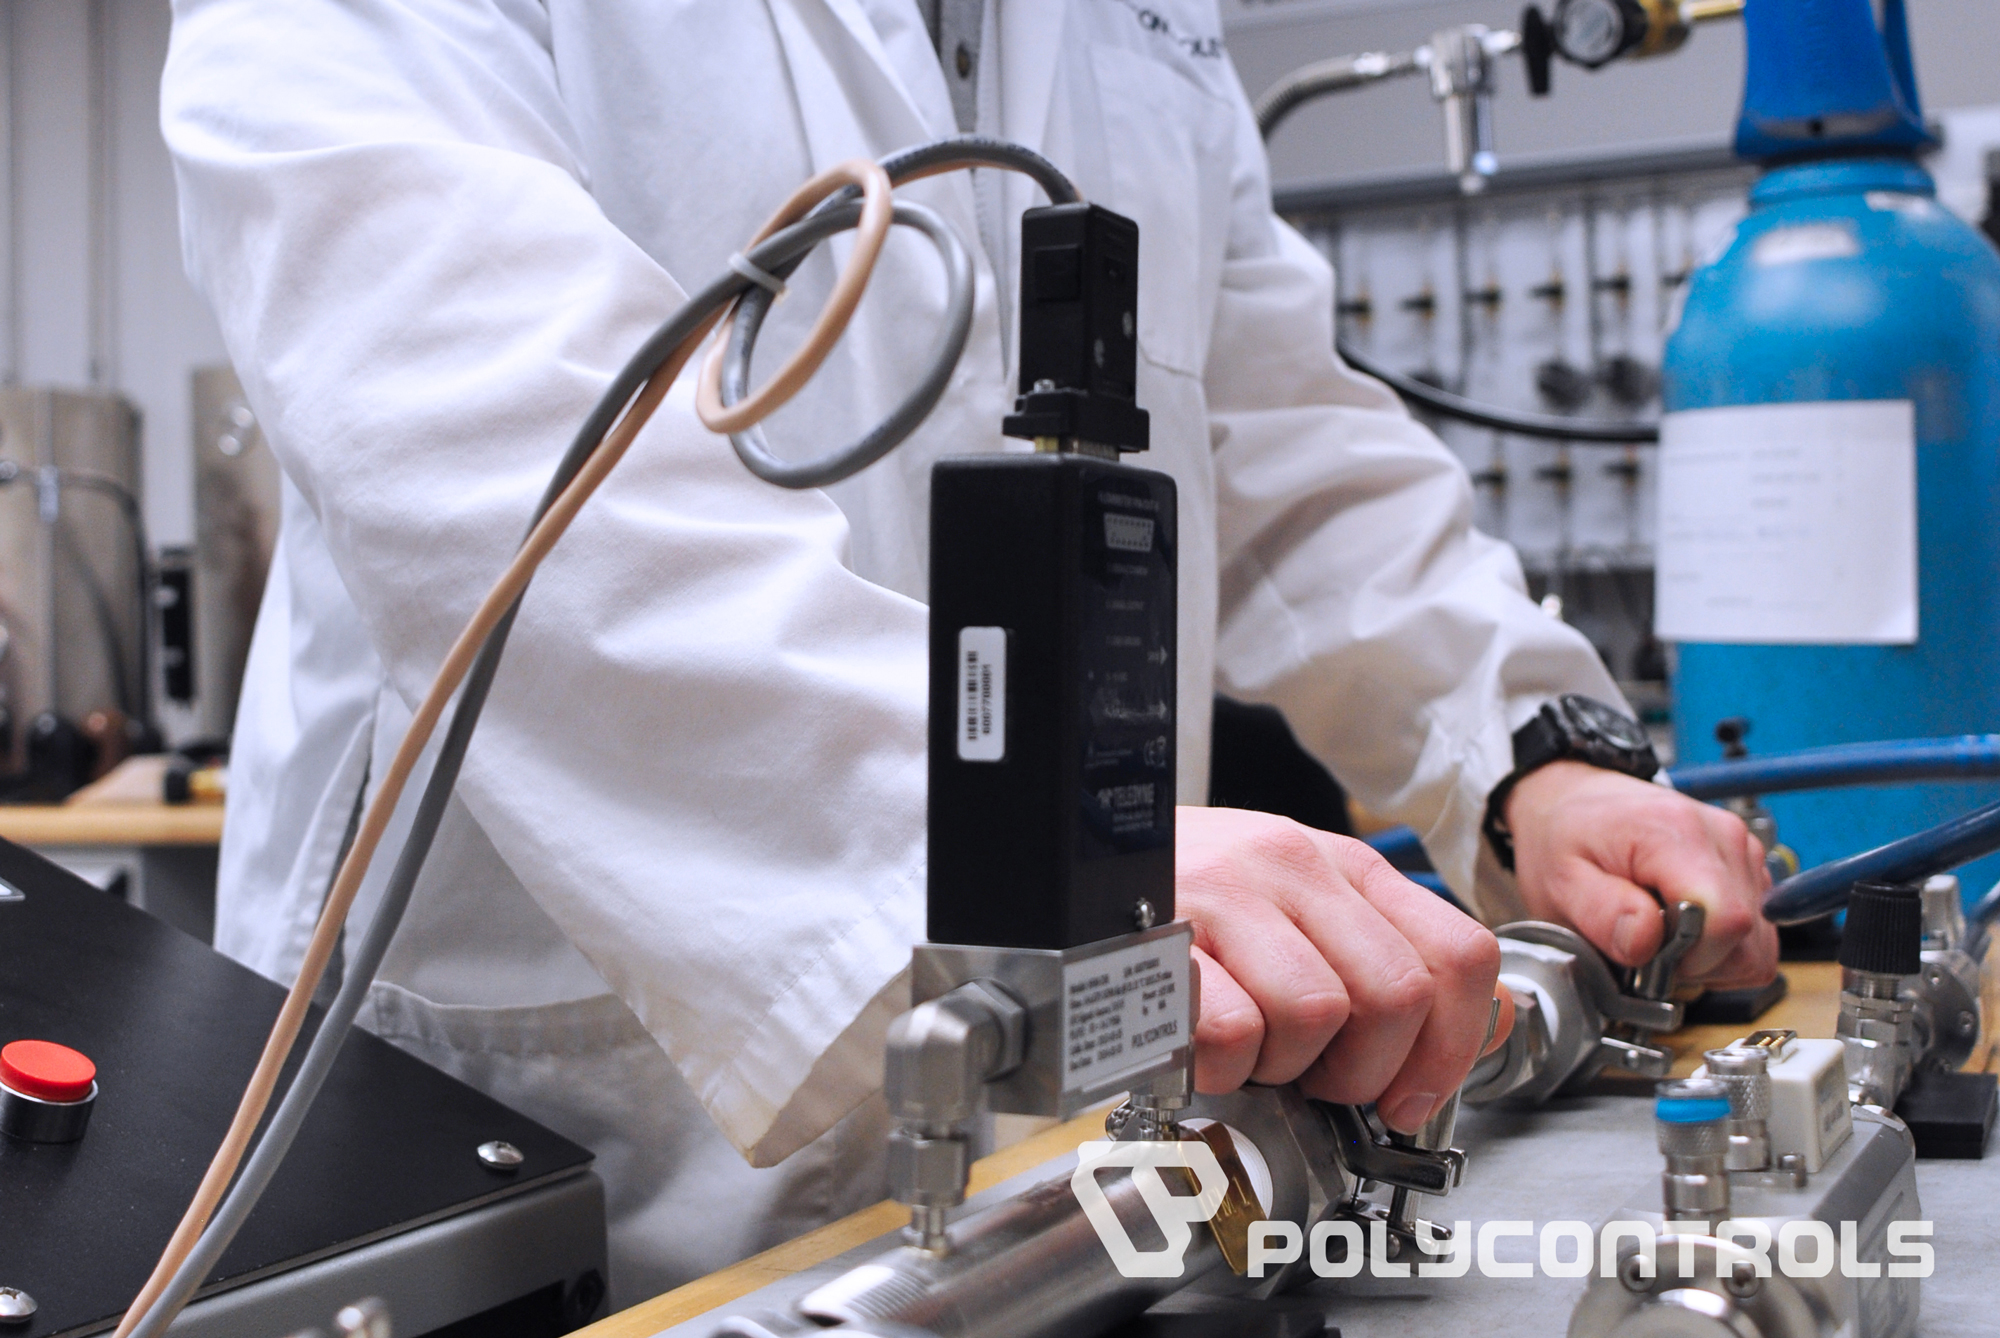 Polycontrols Flow Meter Calibration services